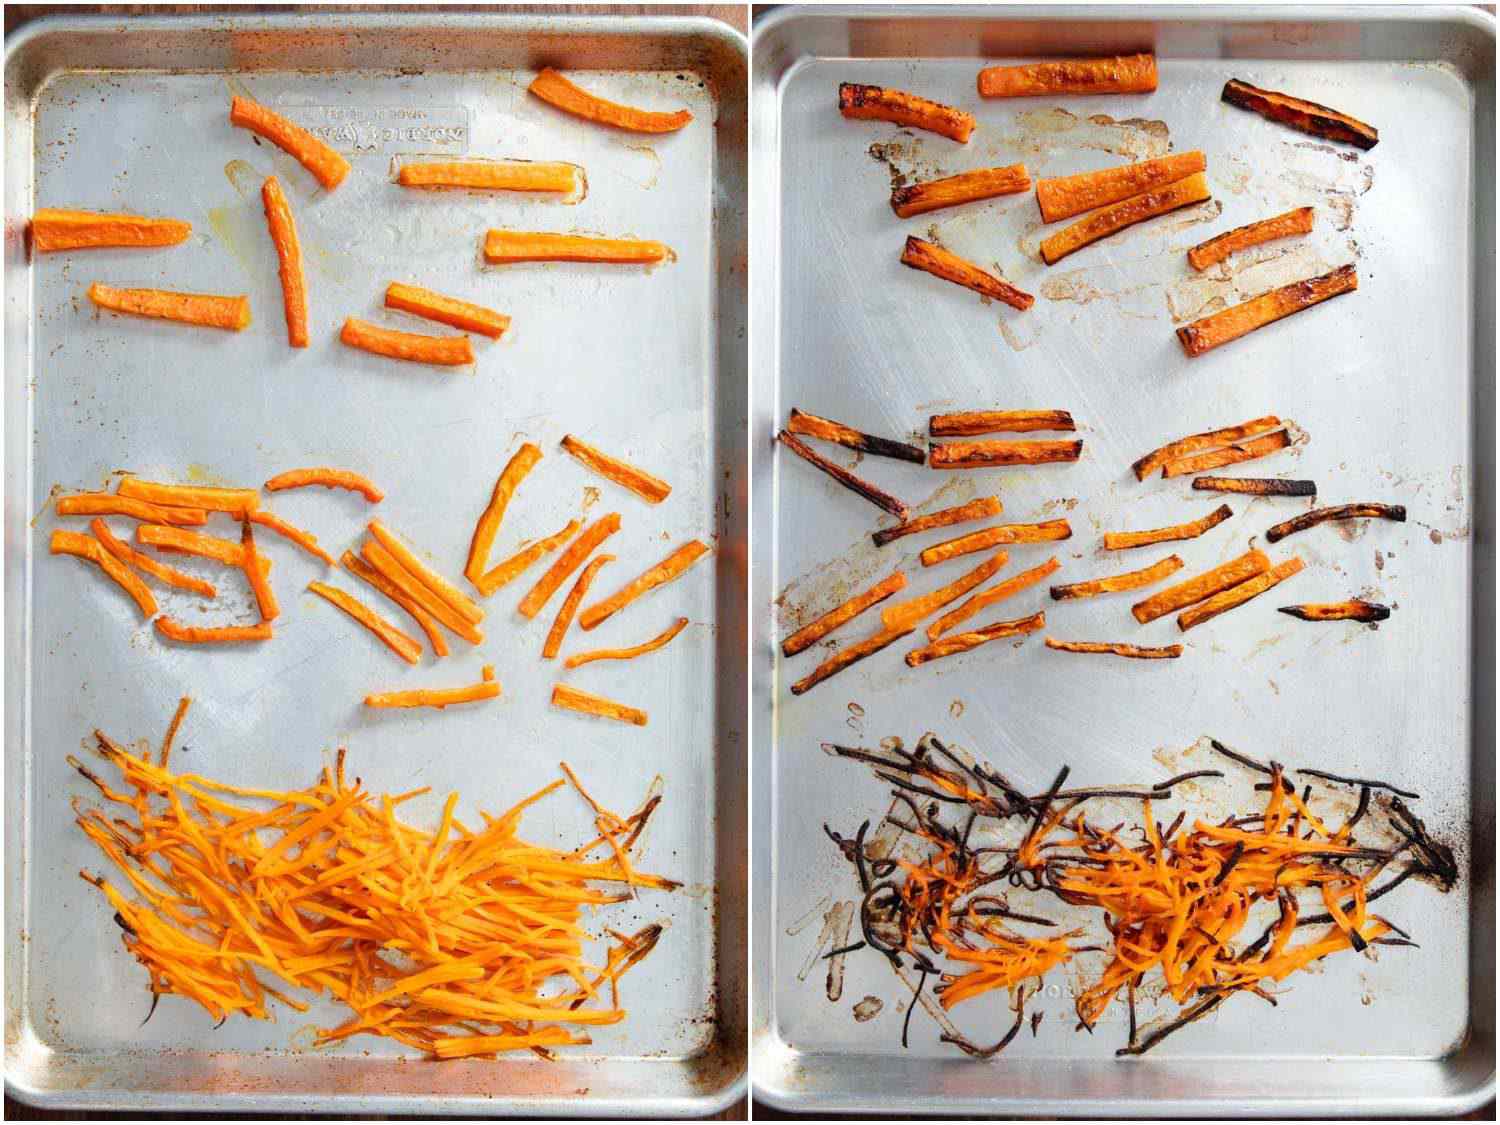 胡萝卜切成不同大小，但在同一烤箱，在同一温度下烹饪的比较。小的烧焦了，大的还没烧焦。